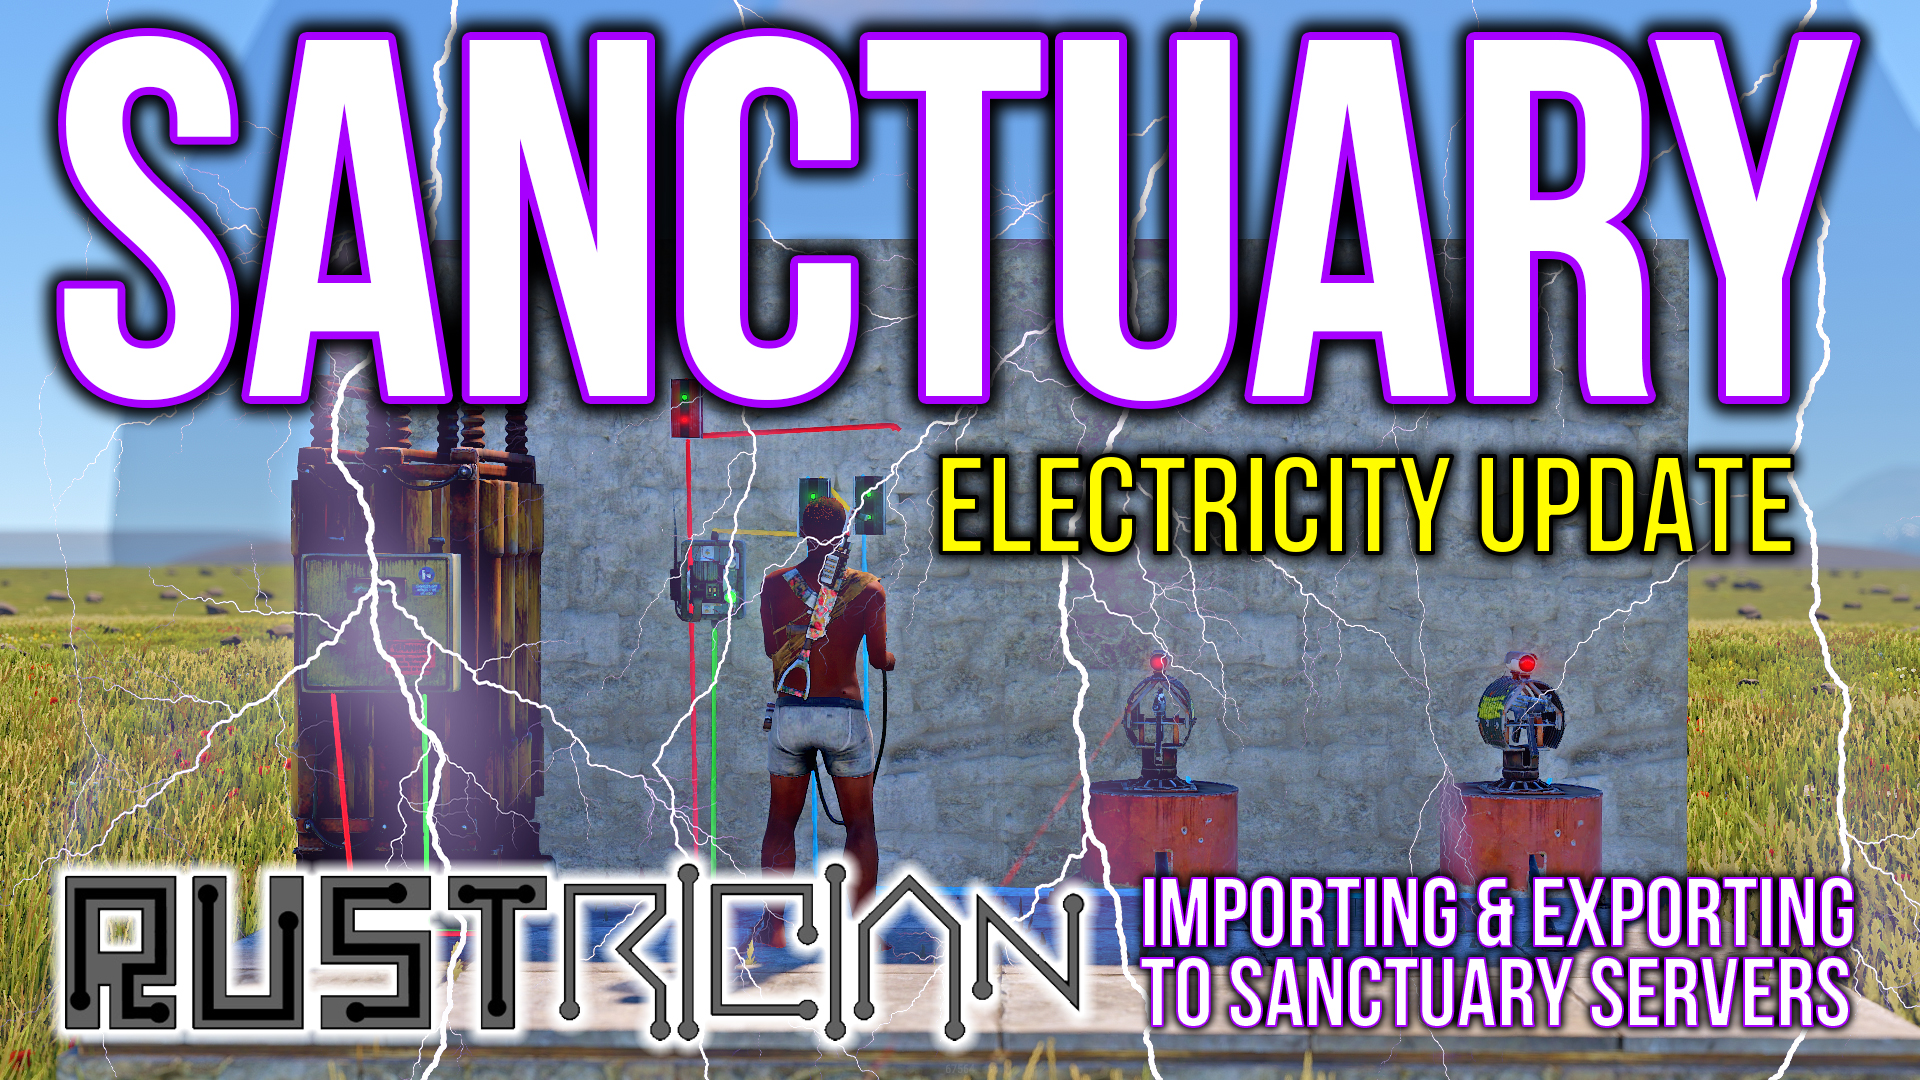 Sanctuary_Electricity_Thumbnail_Purple